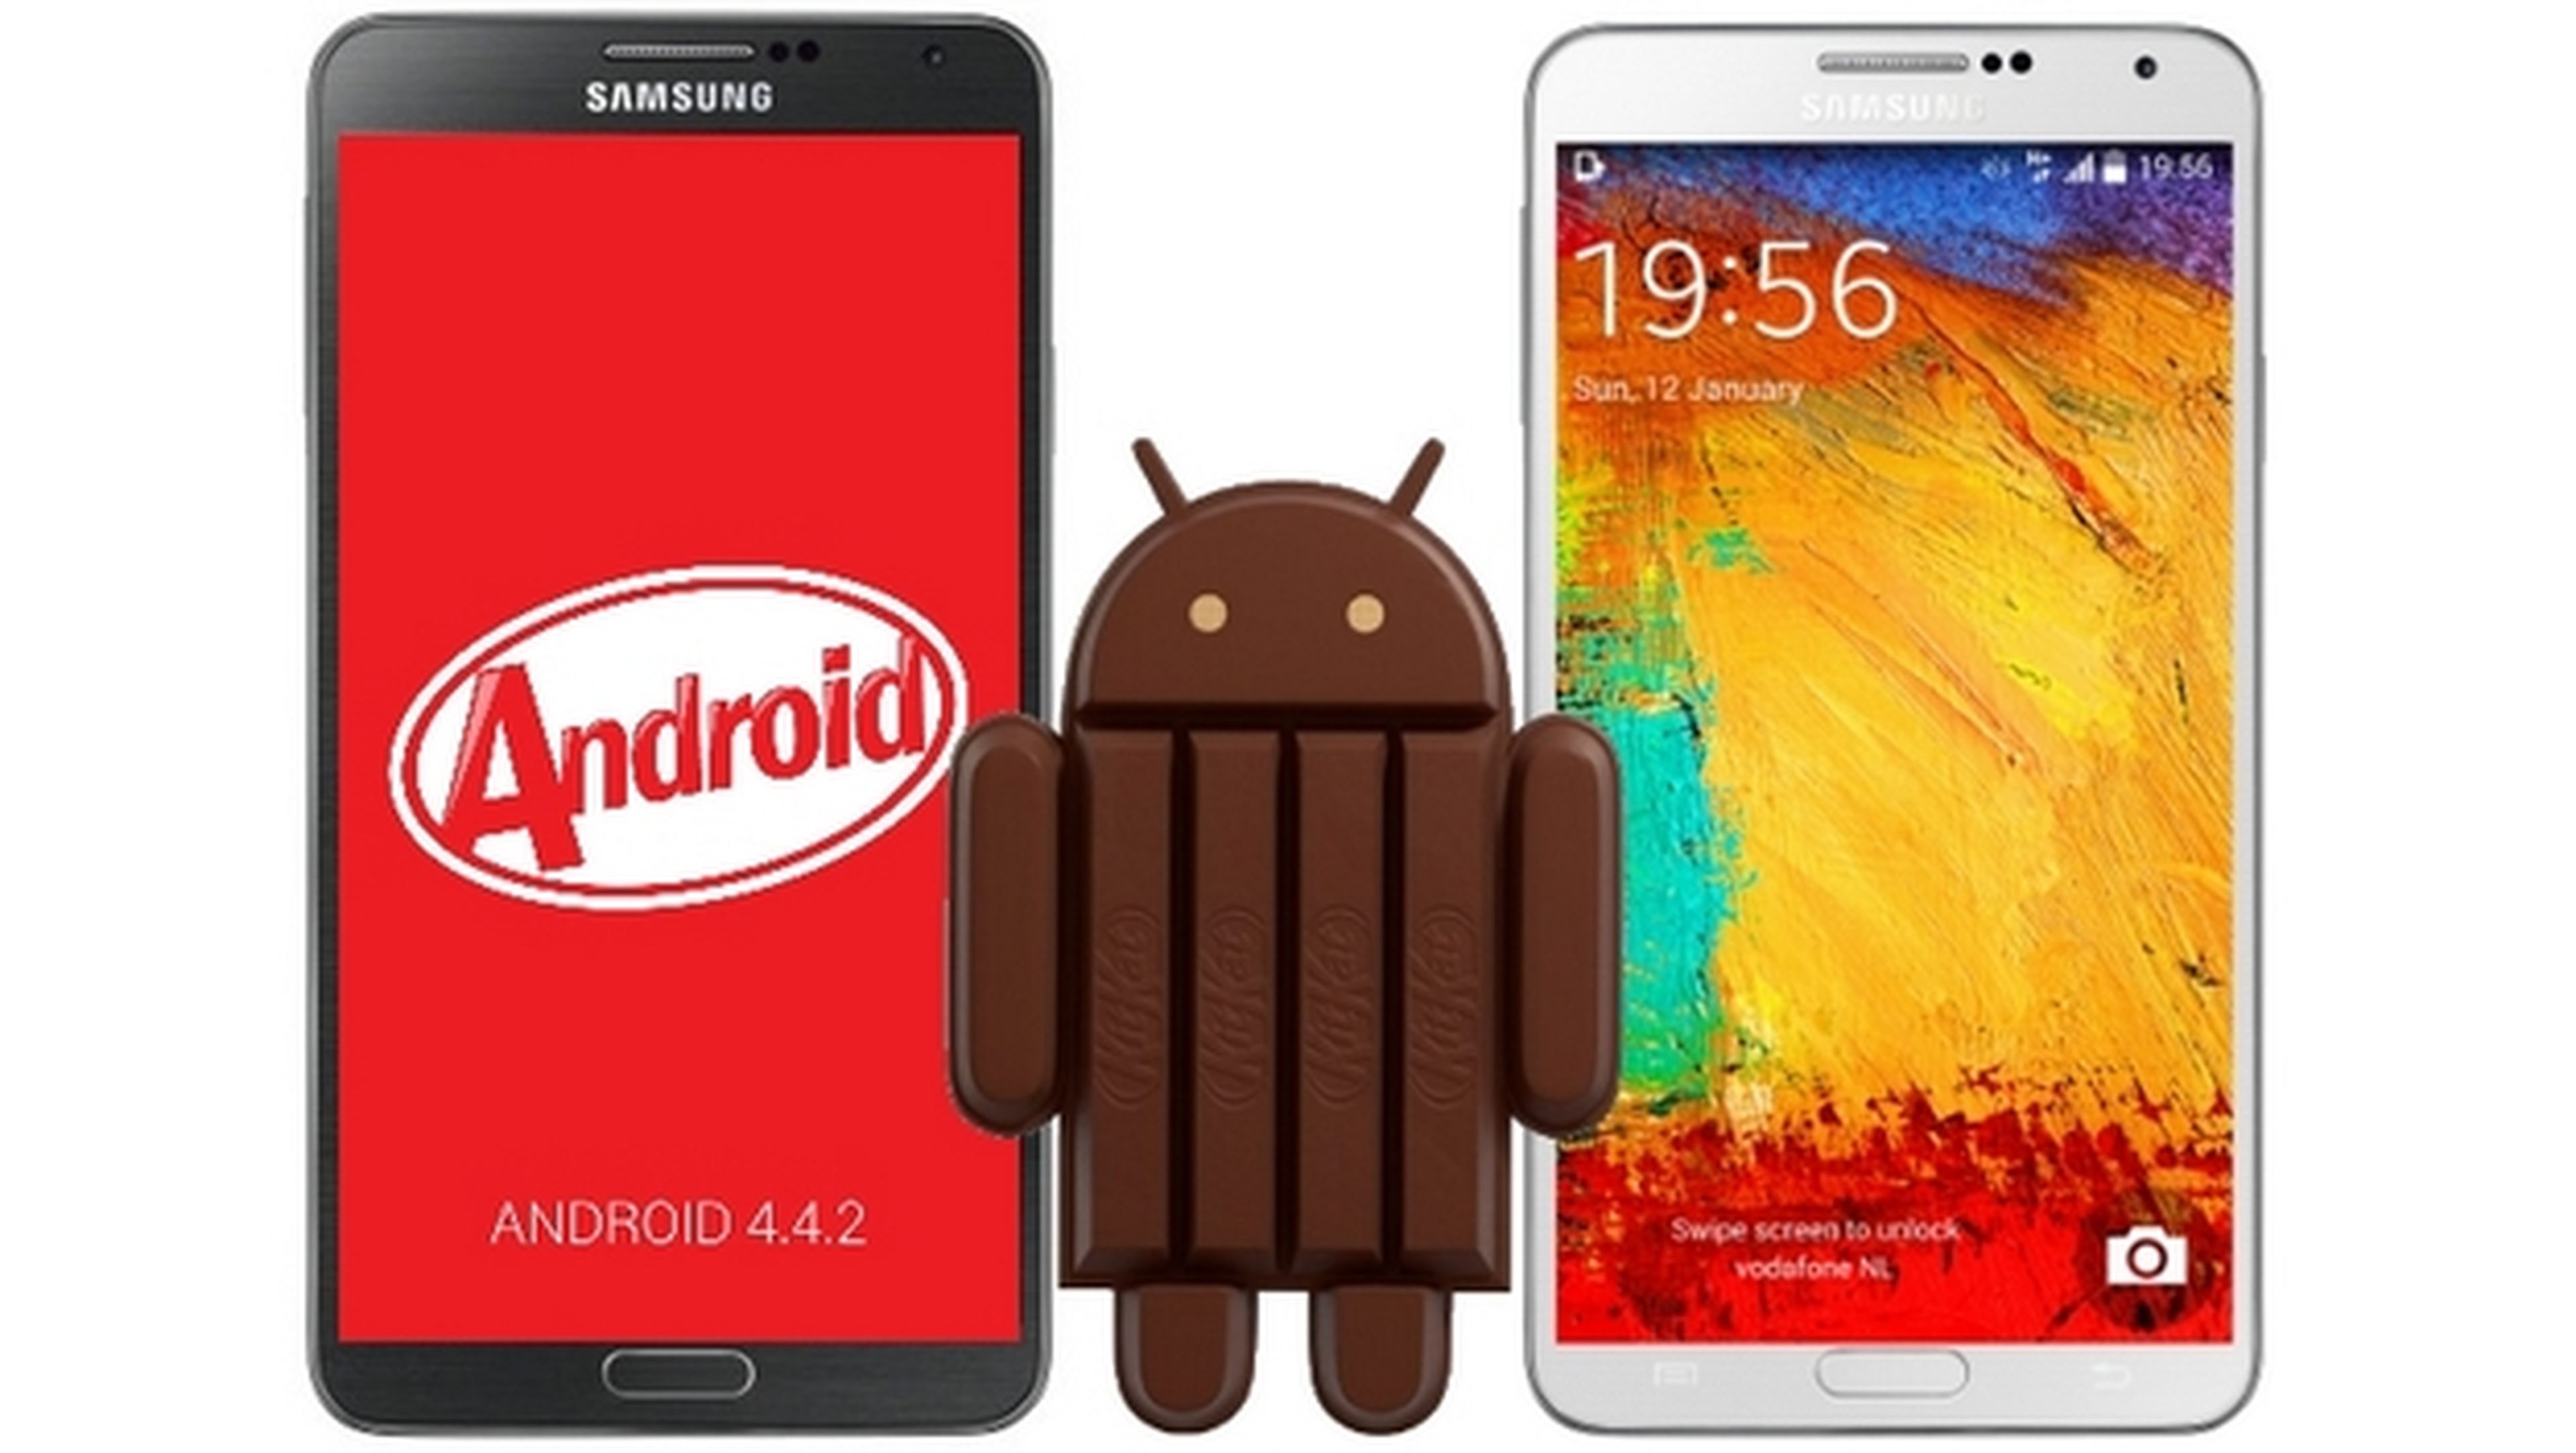 Android 4.4.2 KitKat, ya disponible para el Samsung Galaxy S4 libre I9505 en España